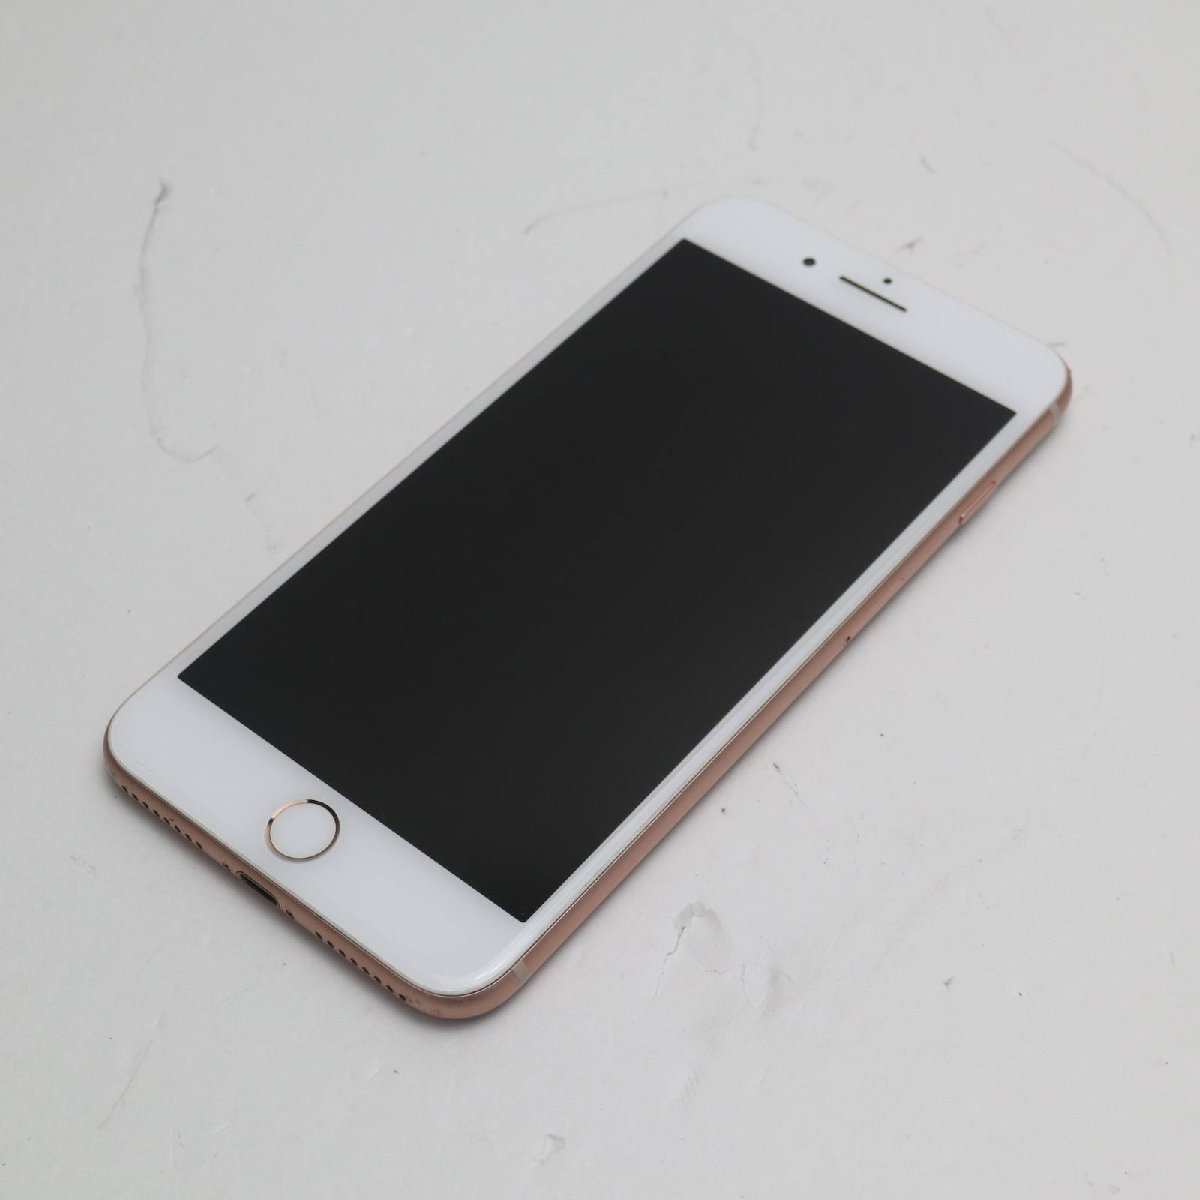 良品中古 SIMフリー iPhone8 PLUS 256GB ゴールド 即日発送 スマホ Apple 本体 白ロム あすつく 土日祝発送OK